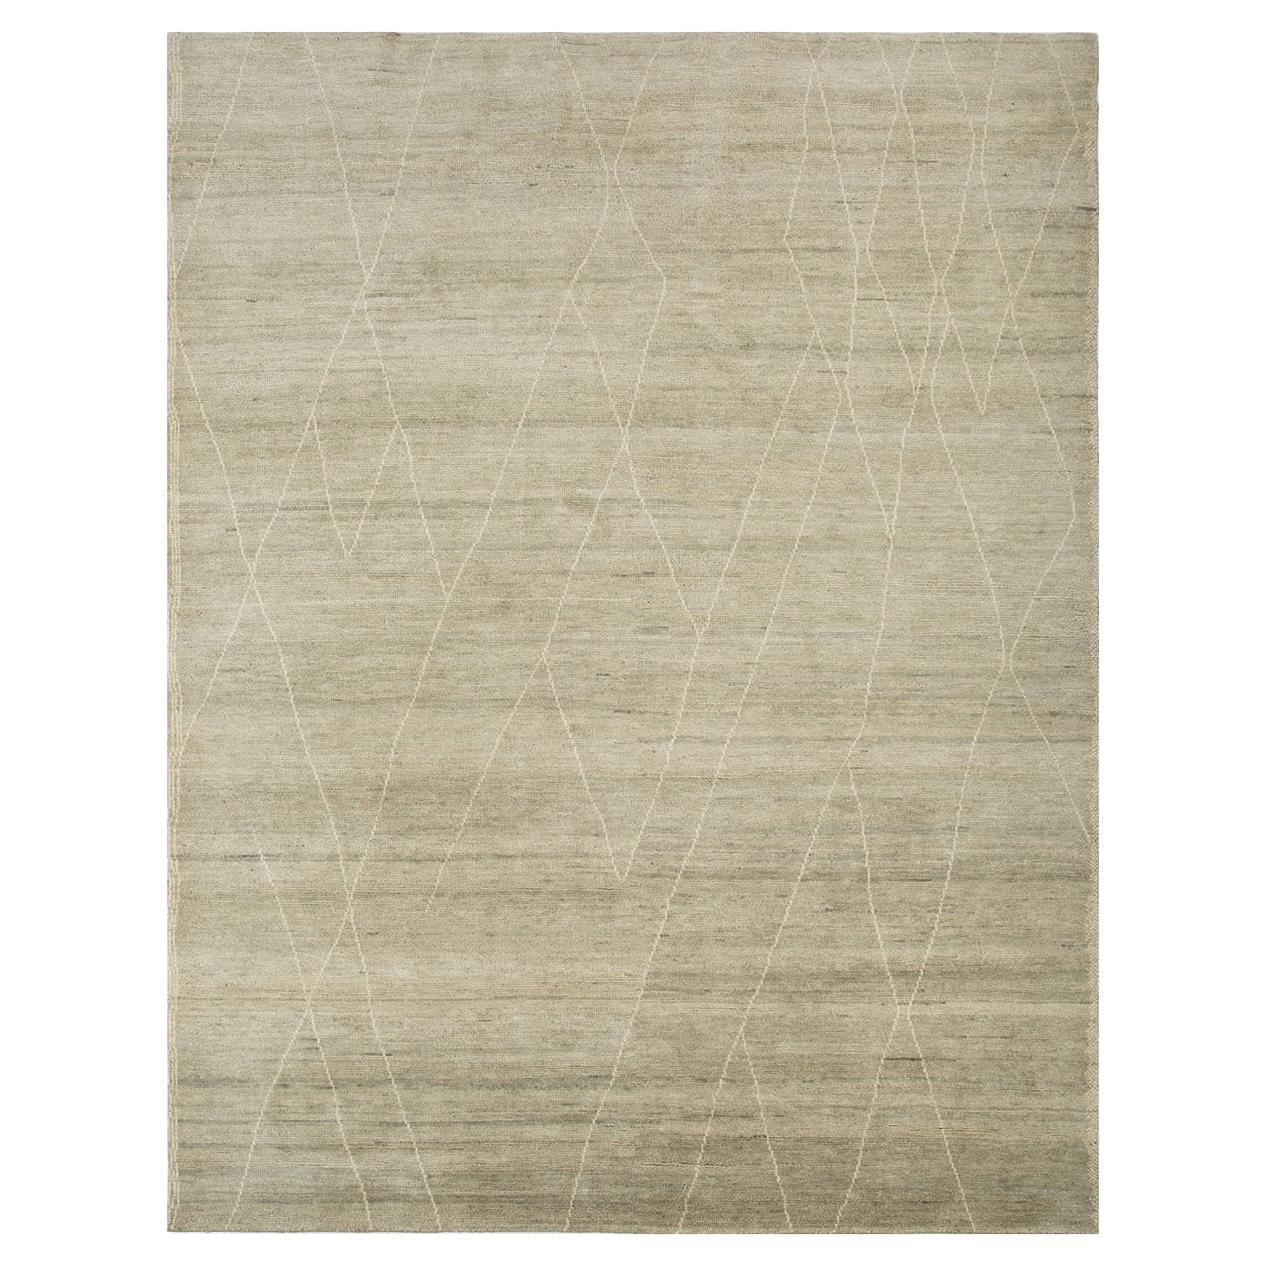 Taup-Teppich von Rural Weavers, geknüpft, Wolle, 240x300cm